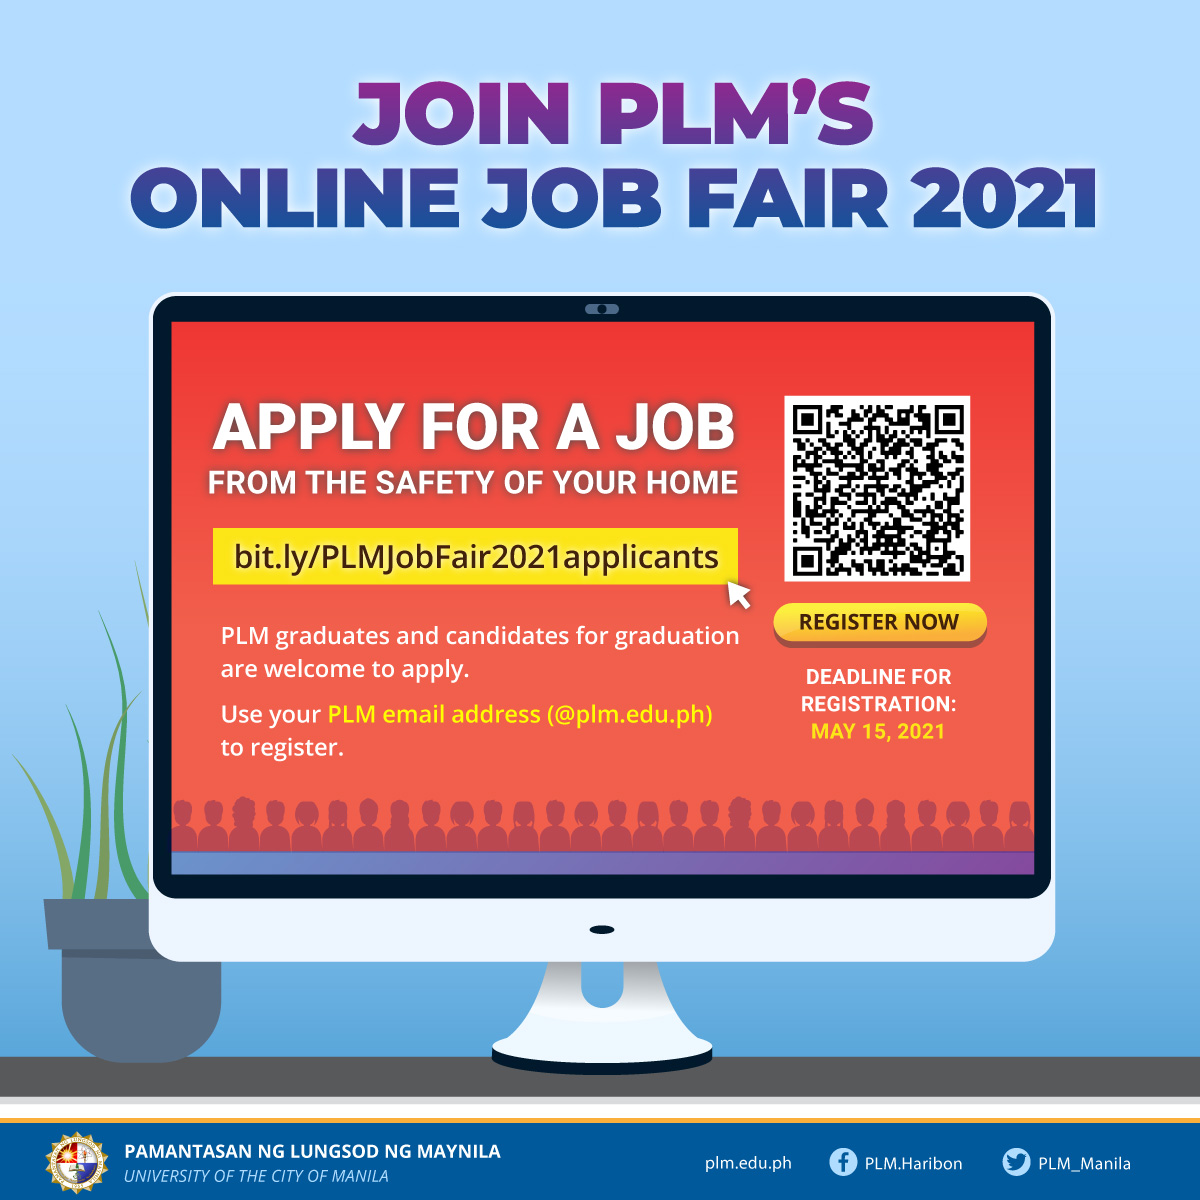 Join PLM's online job fair